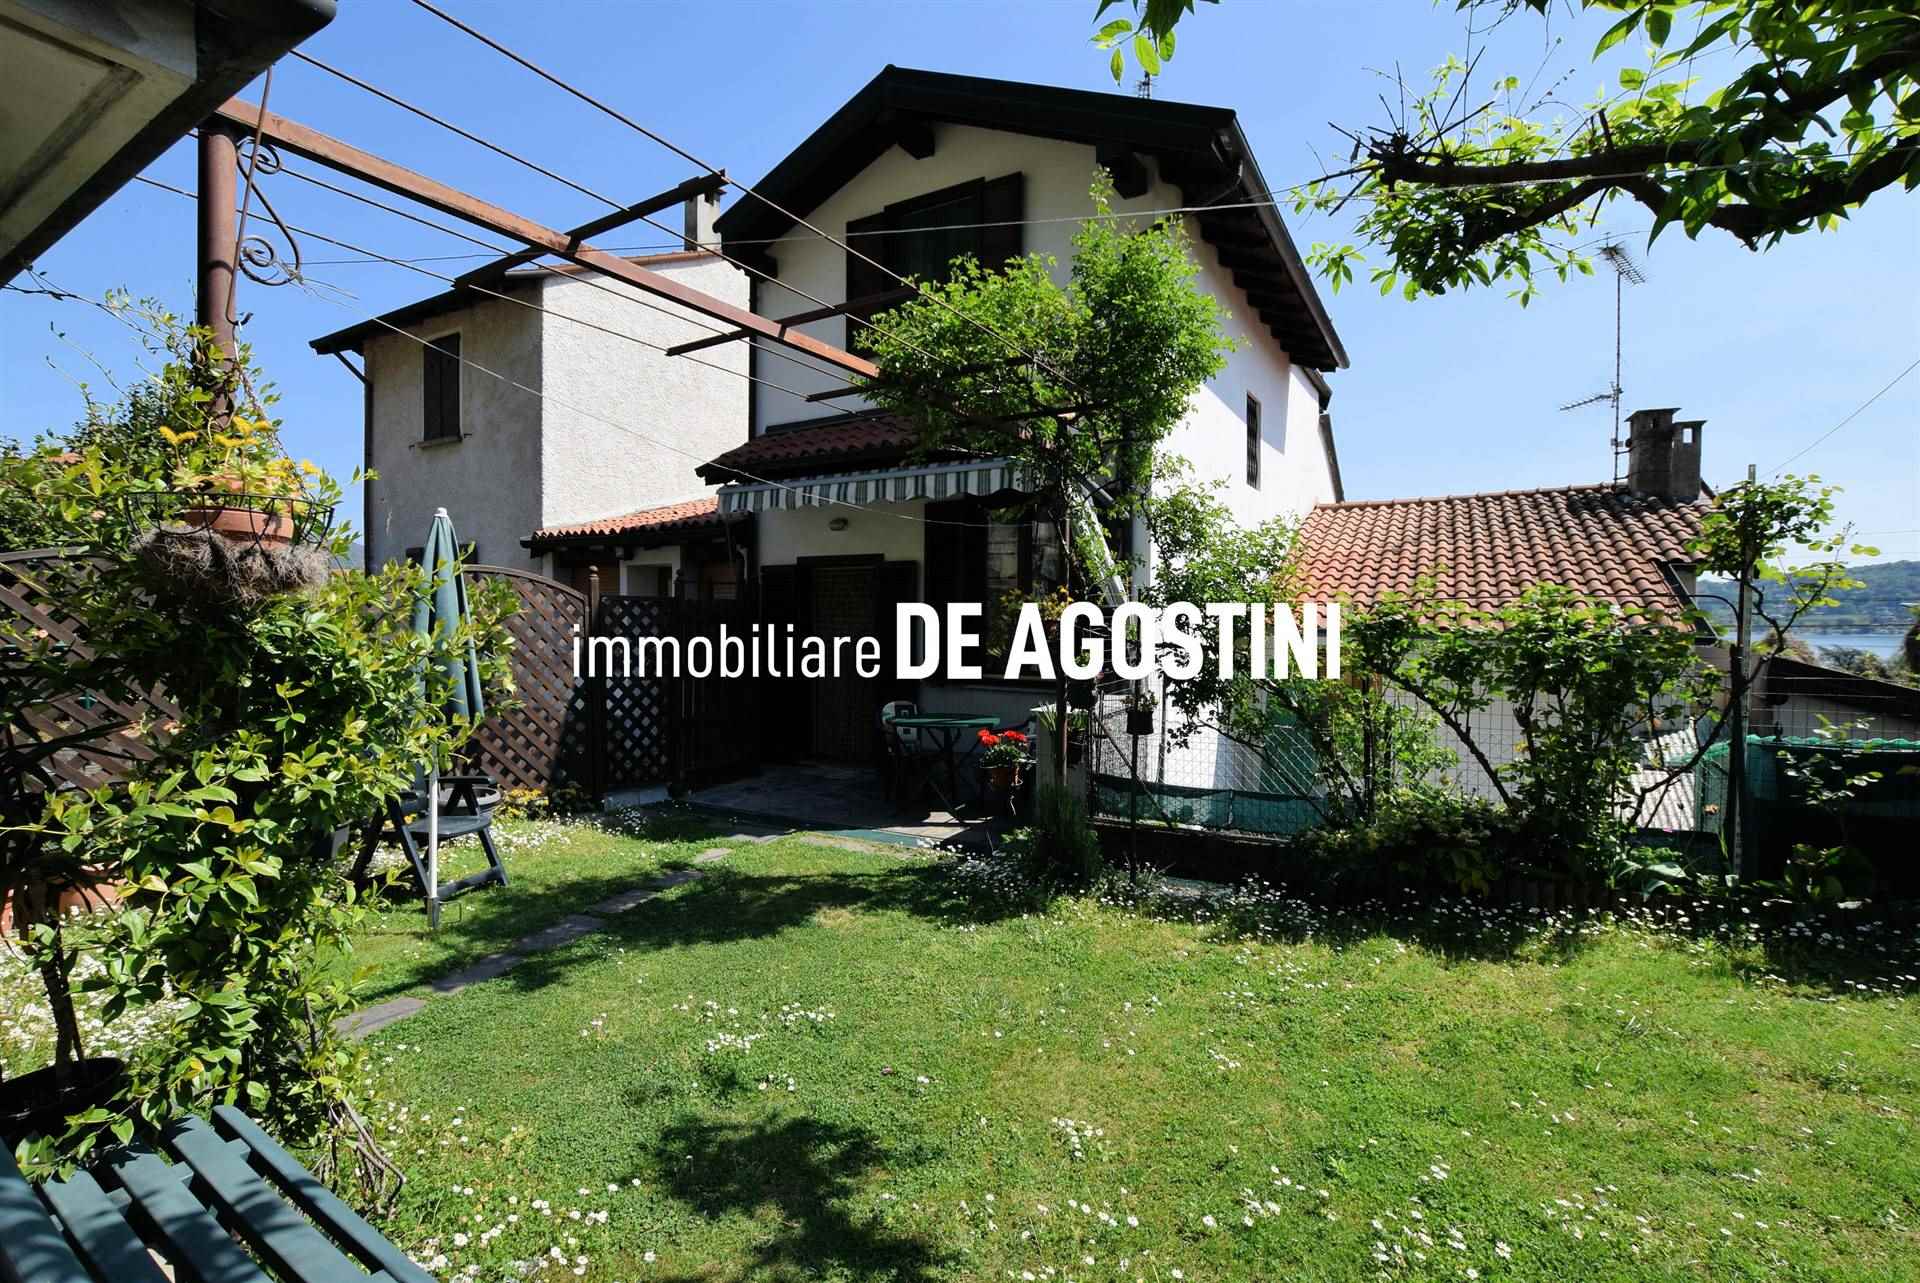 Villa a Schiera in vendita a Meina, 7 locali, prezzo € 230.000 | PortaleAgenzieImmobiliari.it